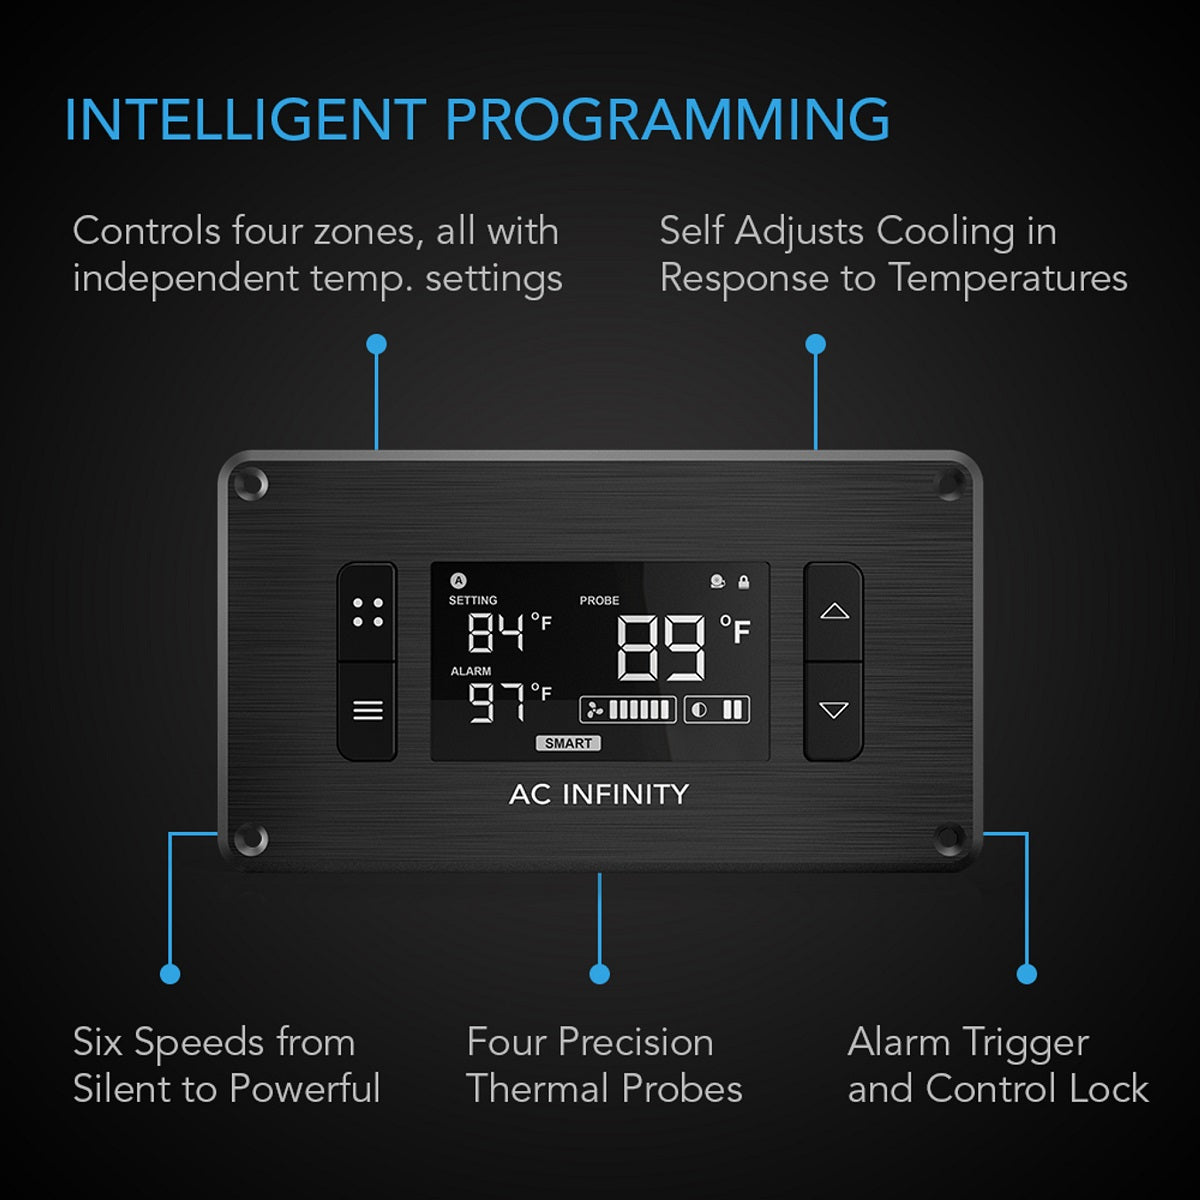 AC Infinity Controller 8 – Regelt Temperatur und Luftfeuchtigkeit in 4 Zonen